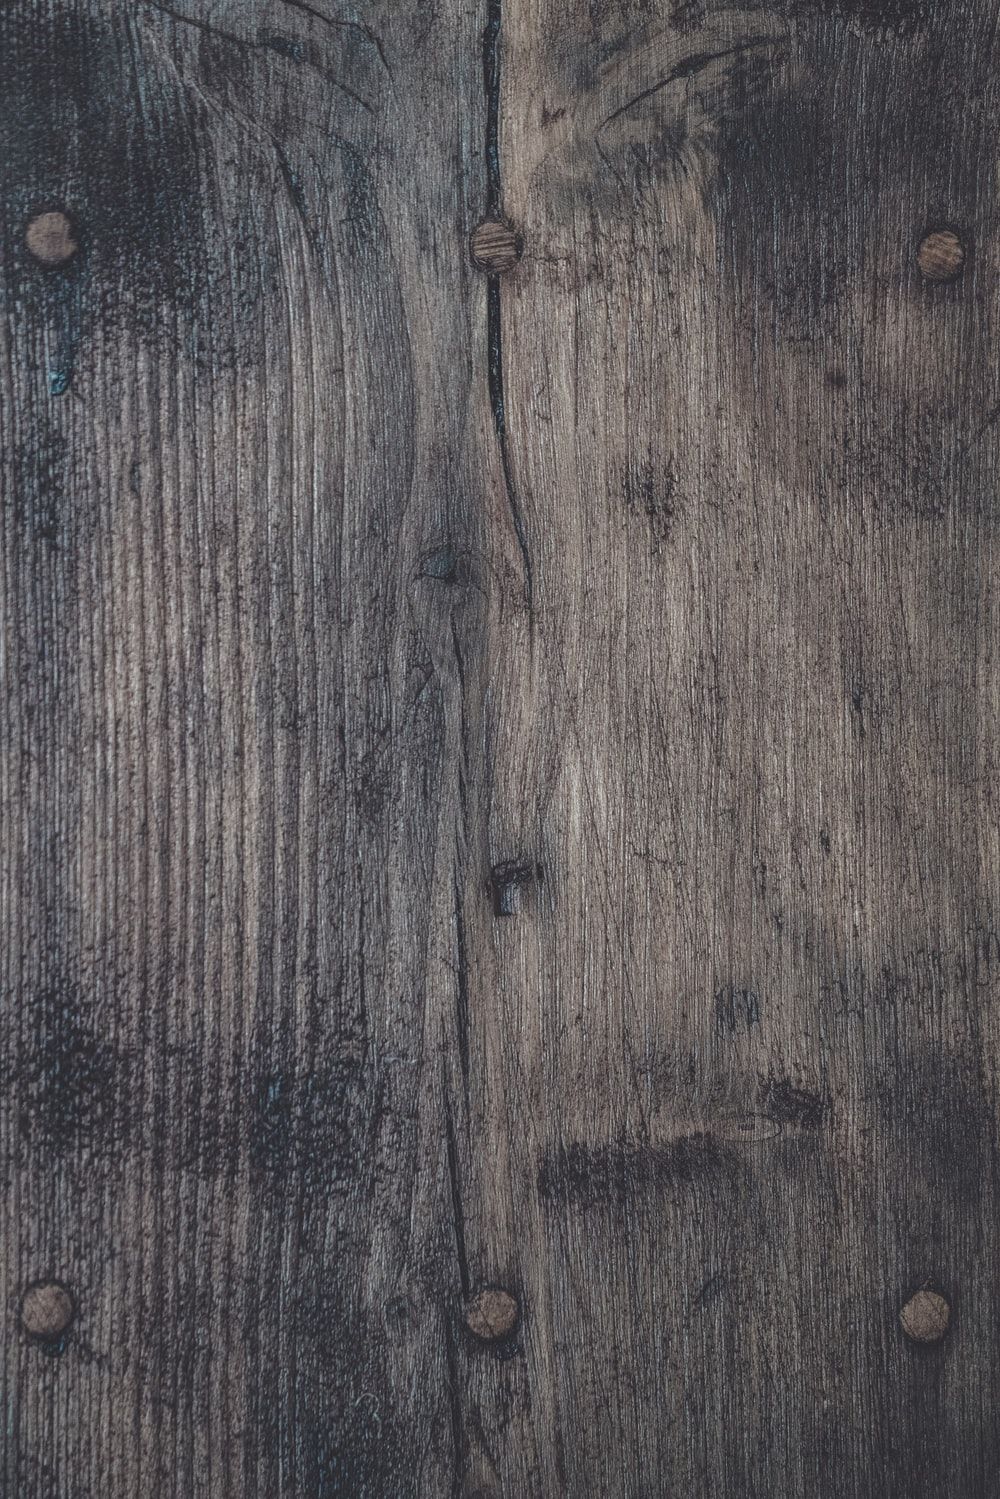 Wood Wallpaper: Free HD Download .com